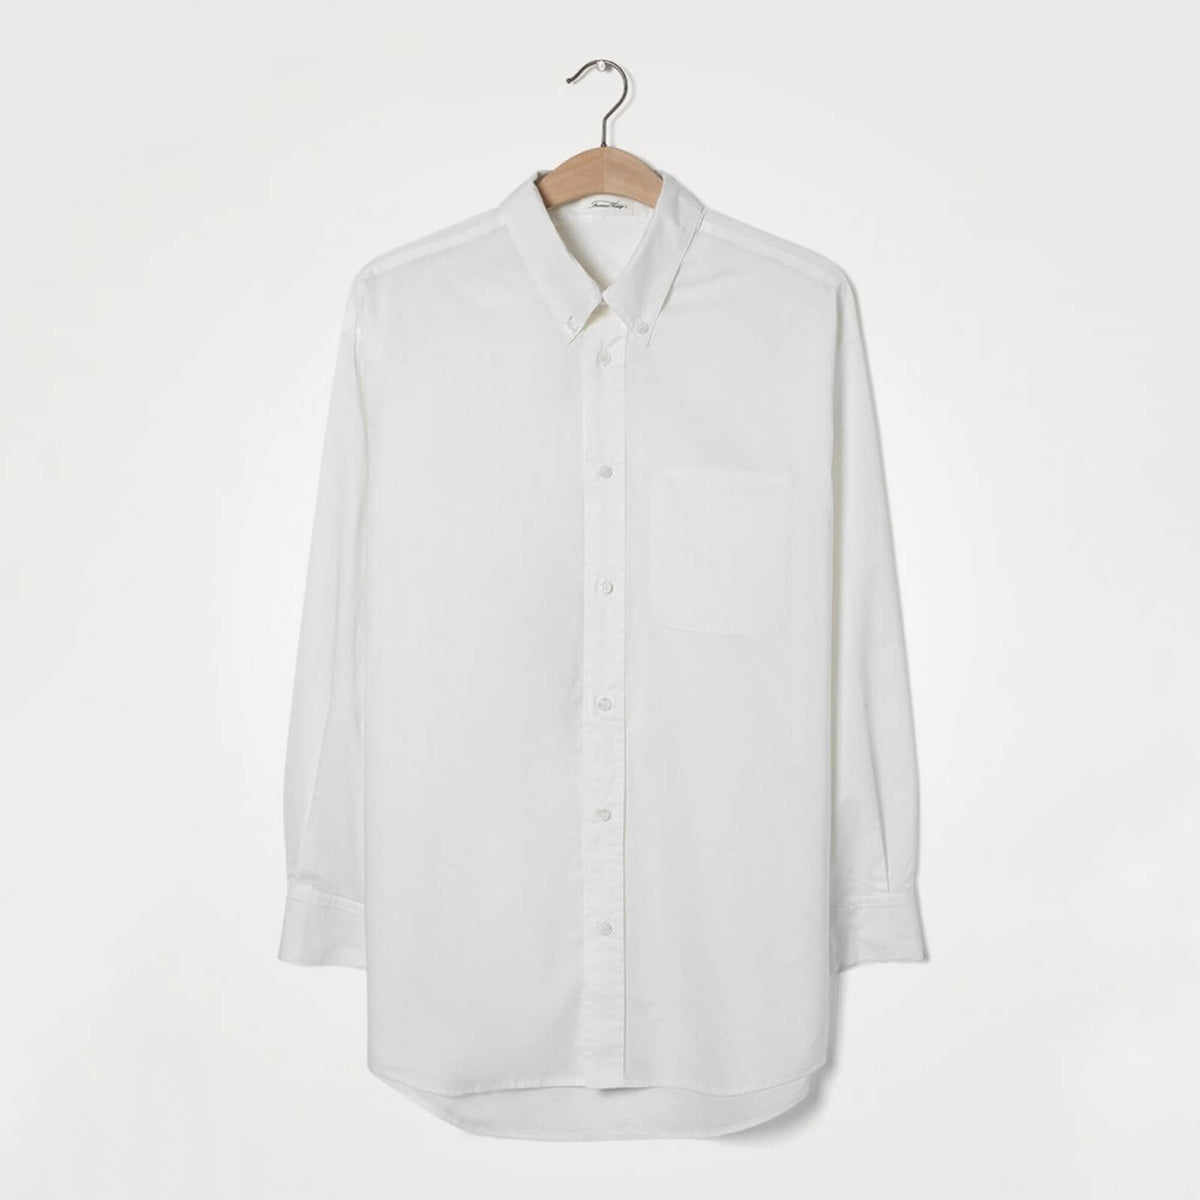 AV KRIM105 Oversized shirt in white